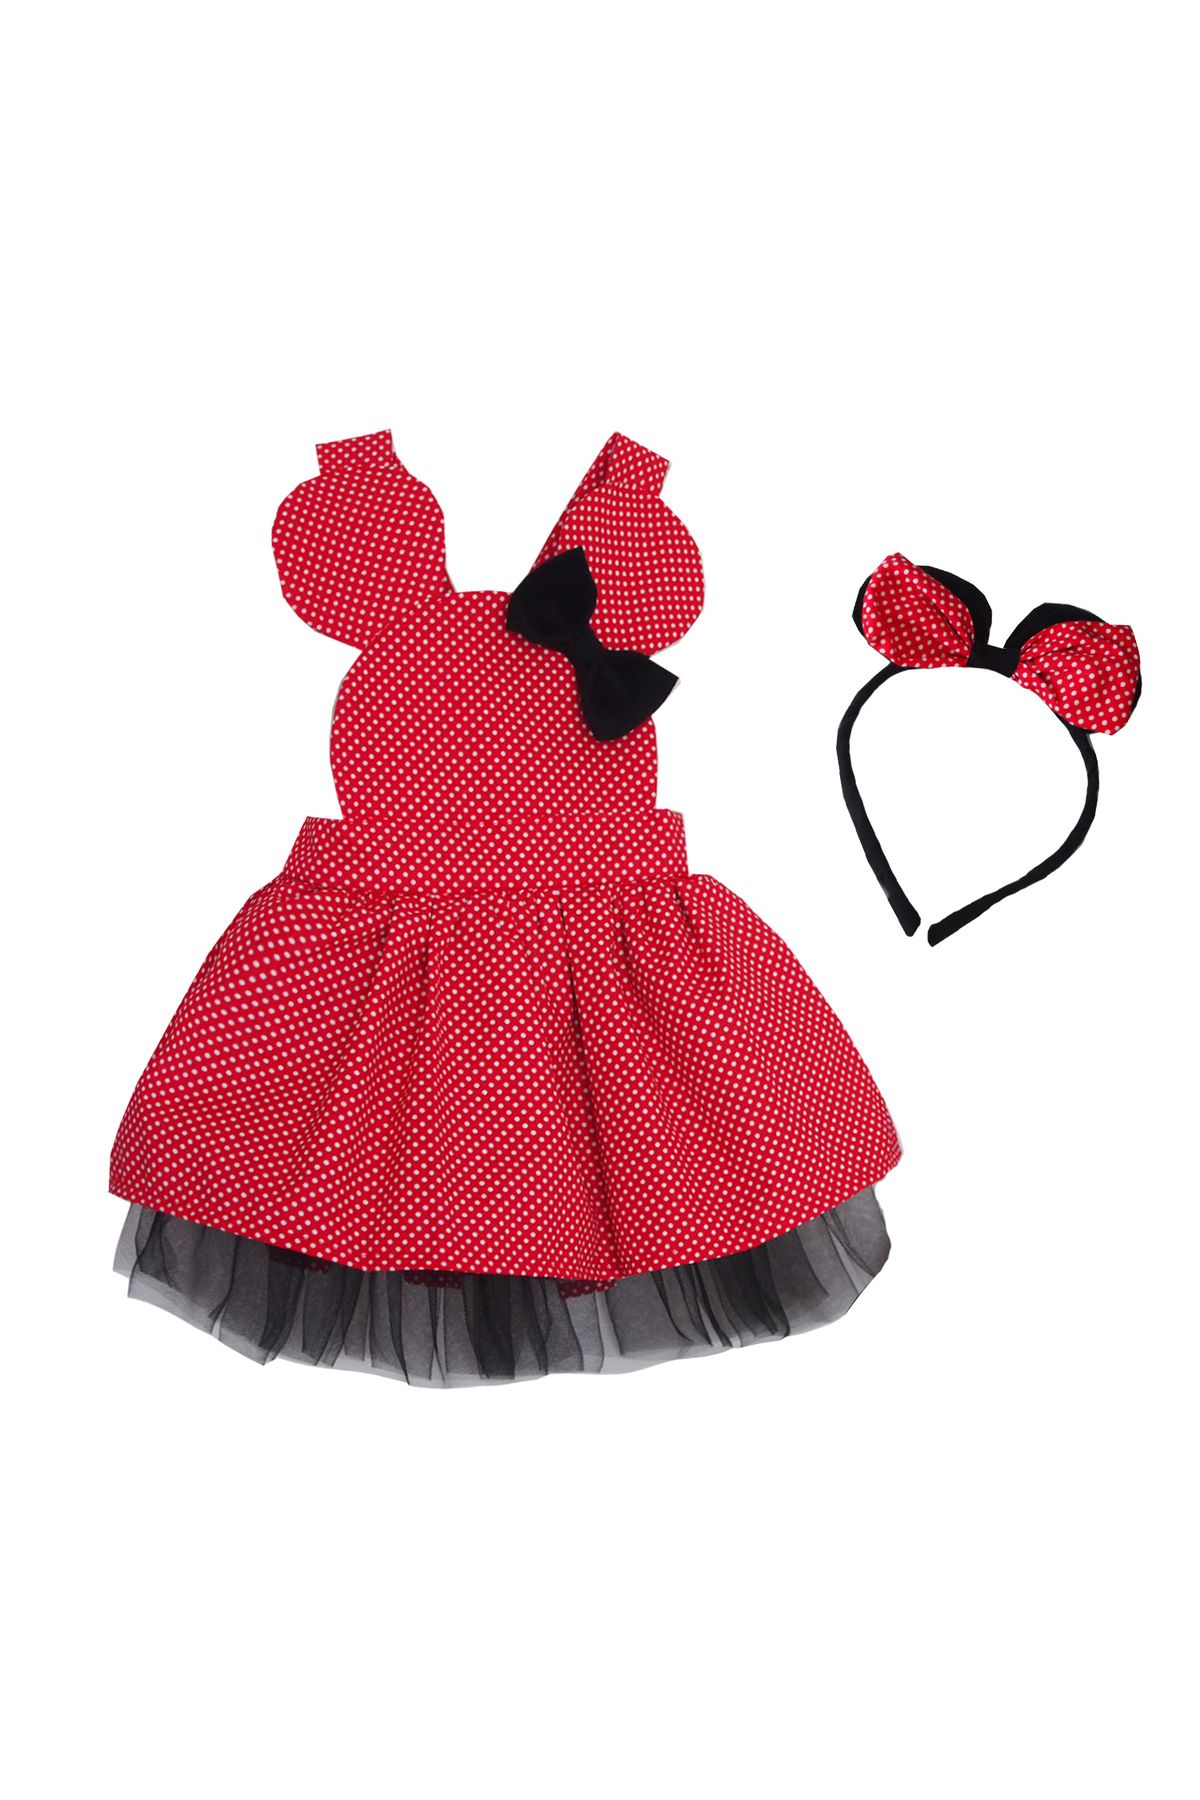 Shecco Babba Kız Çocuk Kırmızı Tütü Elbise Ve Taç, Doğum Günü Elbisesi, Kız Çocuk Elbise Modelleri 5-10 Yaş